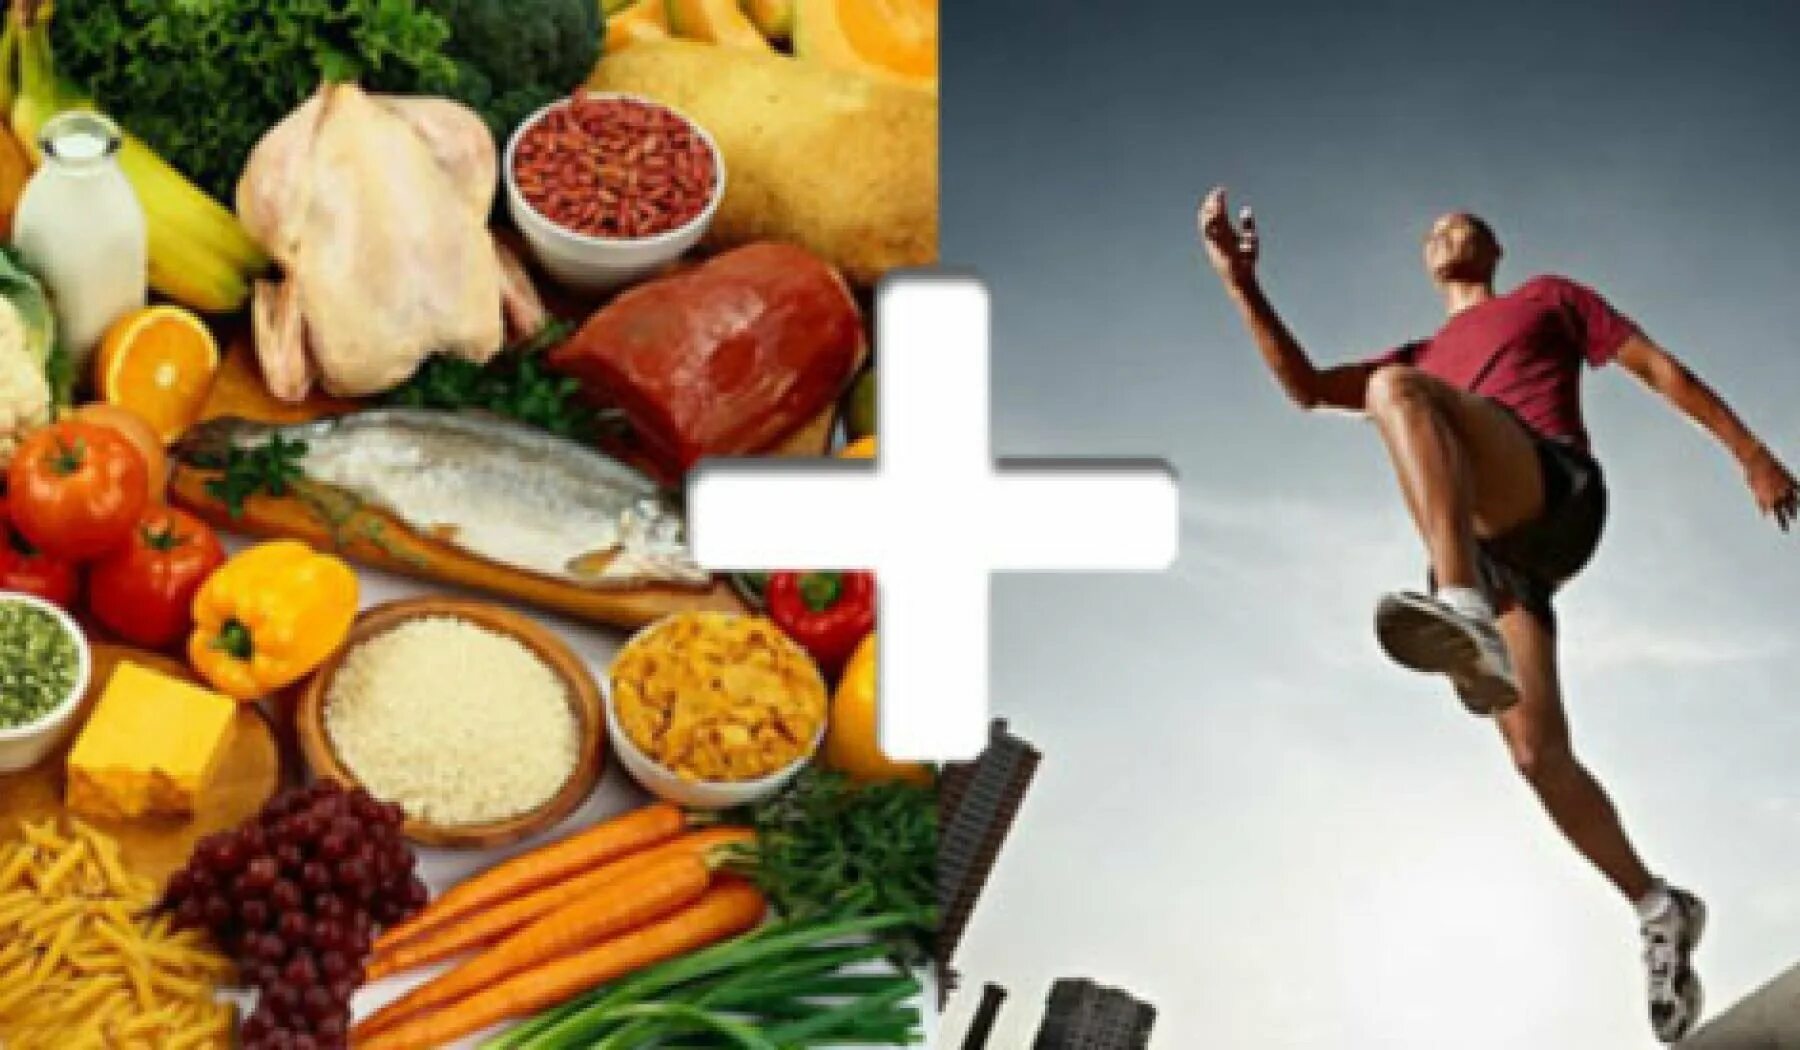 Питание 80 20. Правильное питание и спорт. Здоровое питание и физическая активность. Образ жизни правильное питание. Здоровое питание физические нагрузки.